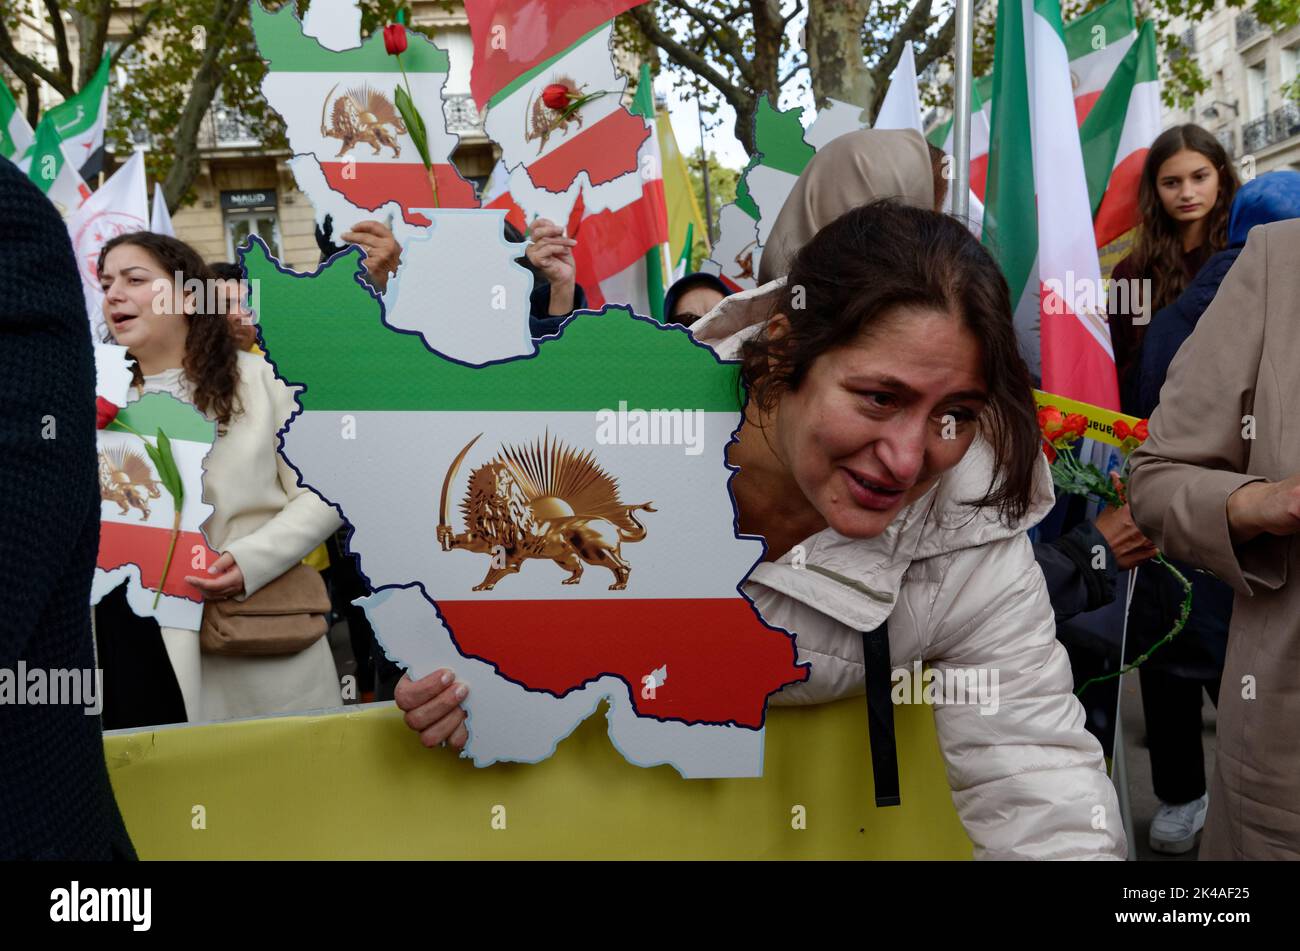 nouveau rassemblement de soutien au peuple iranien qui se révolte contre le régime dictatorial des mollahs Stockfoto